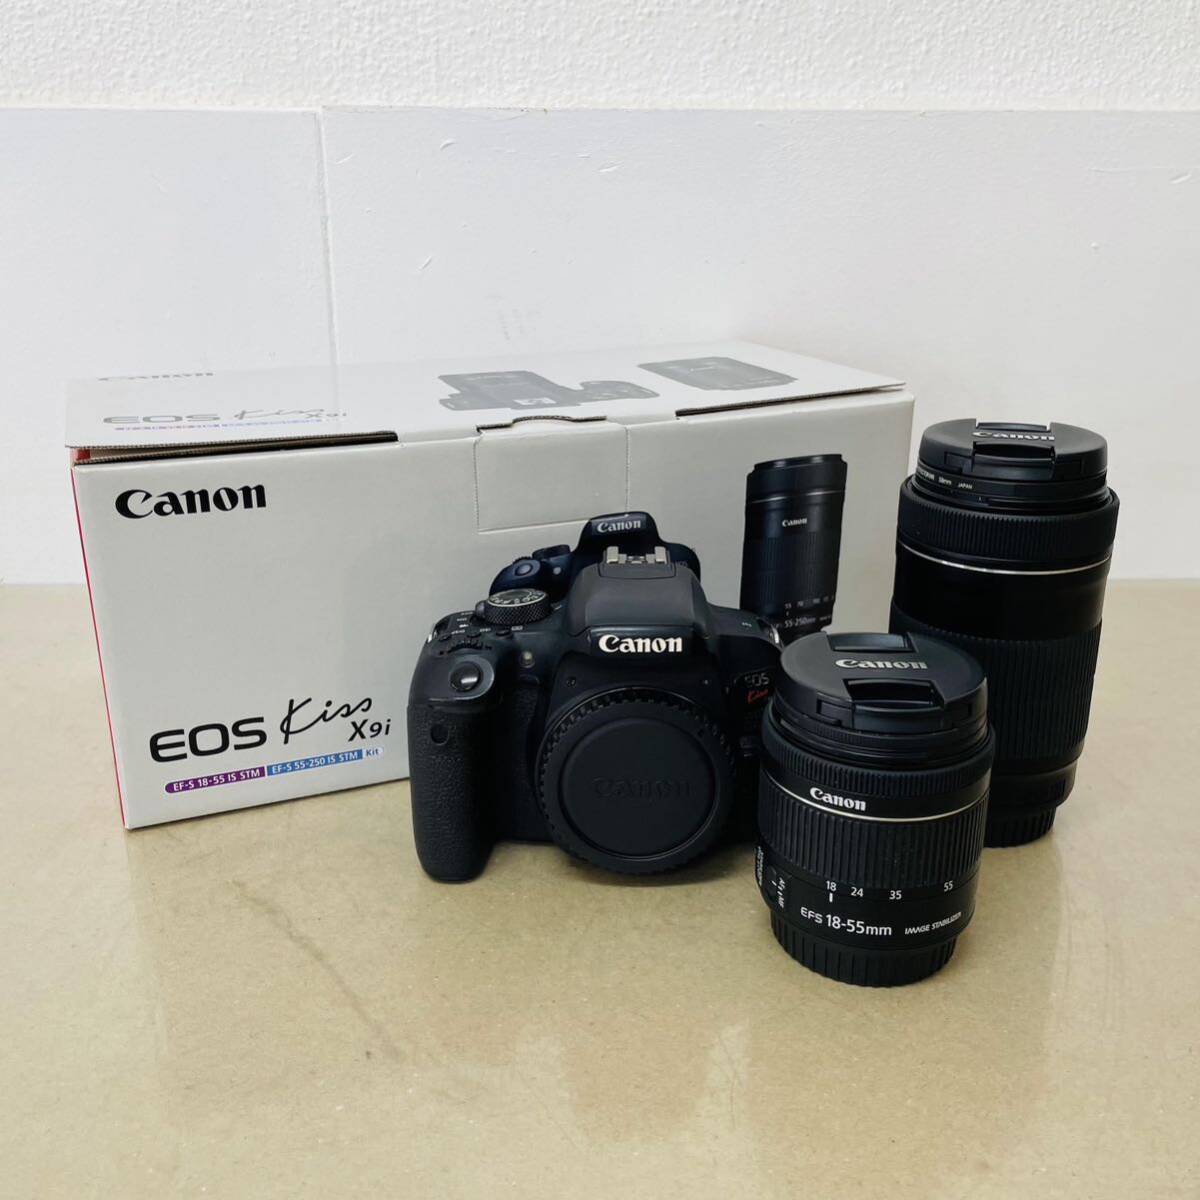 Canon EOS  Kiss X9i  ダブルズームキット  デジタル一眼レフ 箱あり   動作確認済み  i17892  100サイズ発送  の画像1